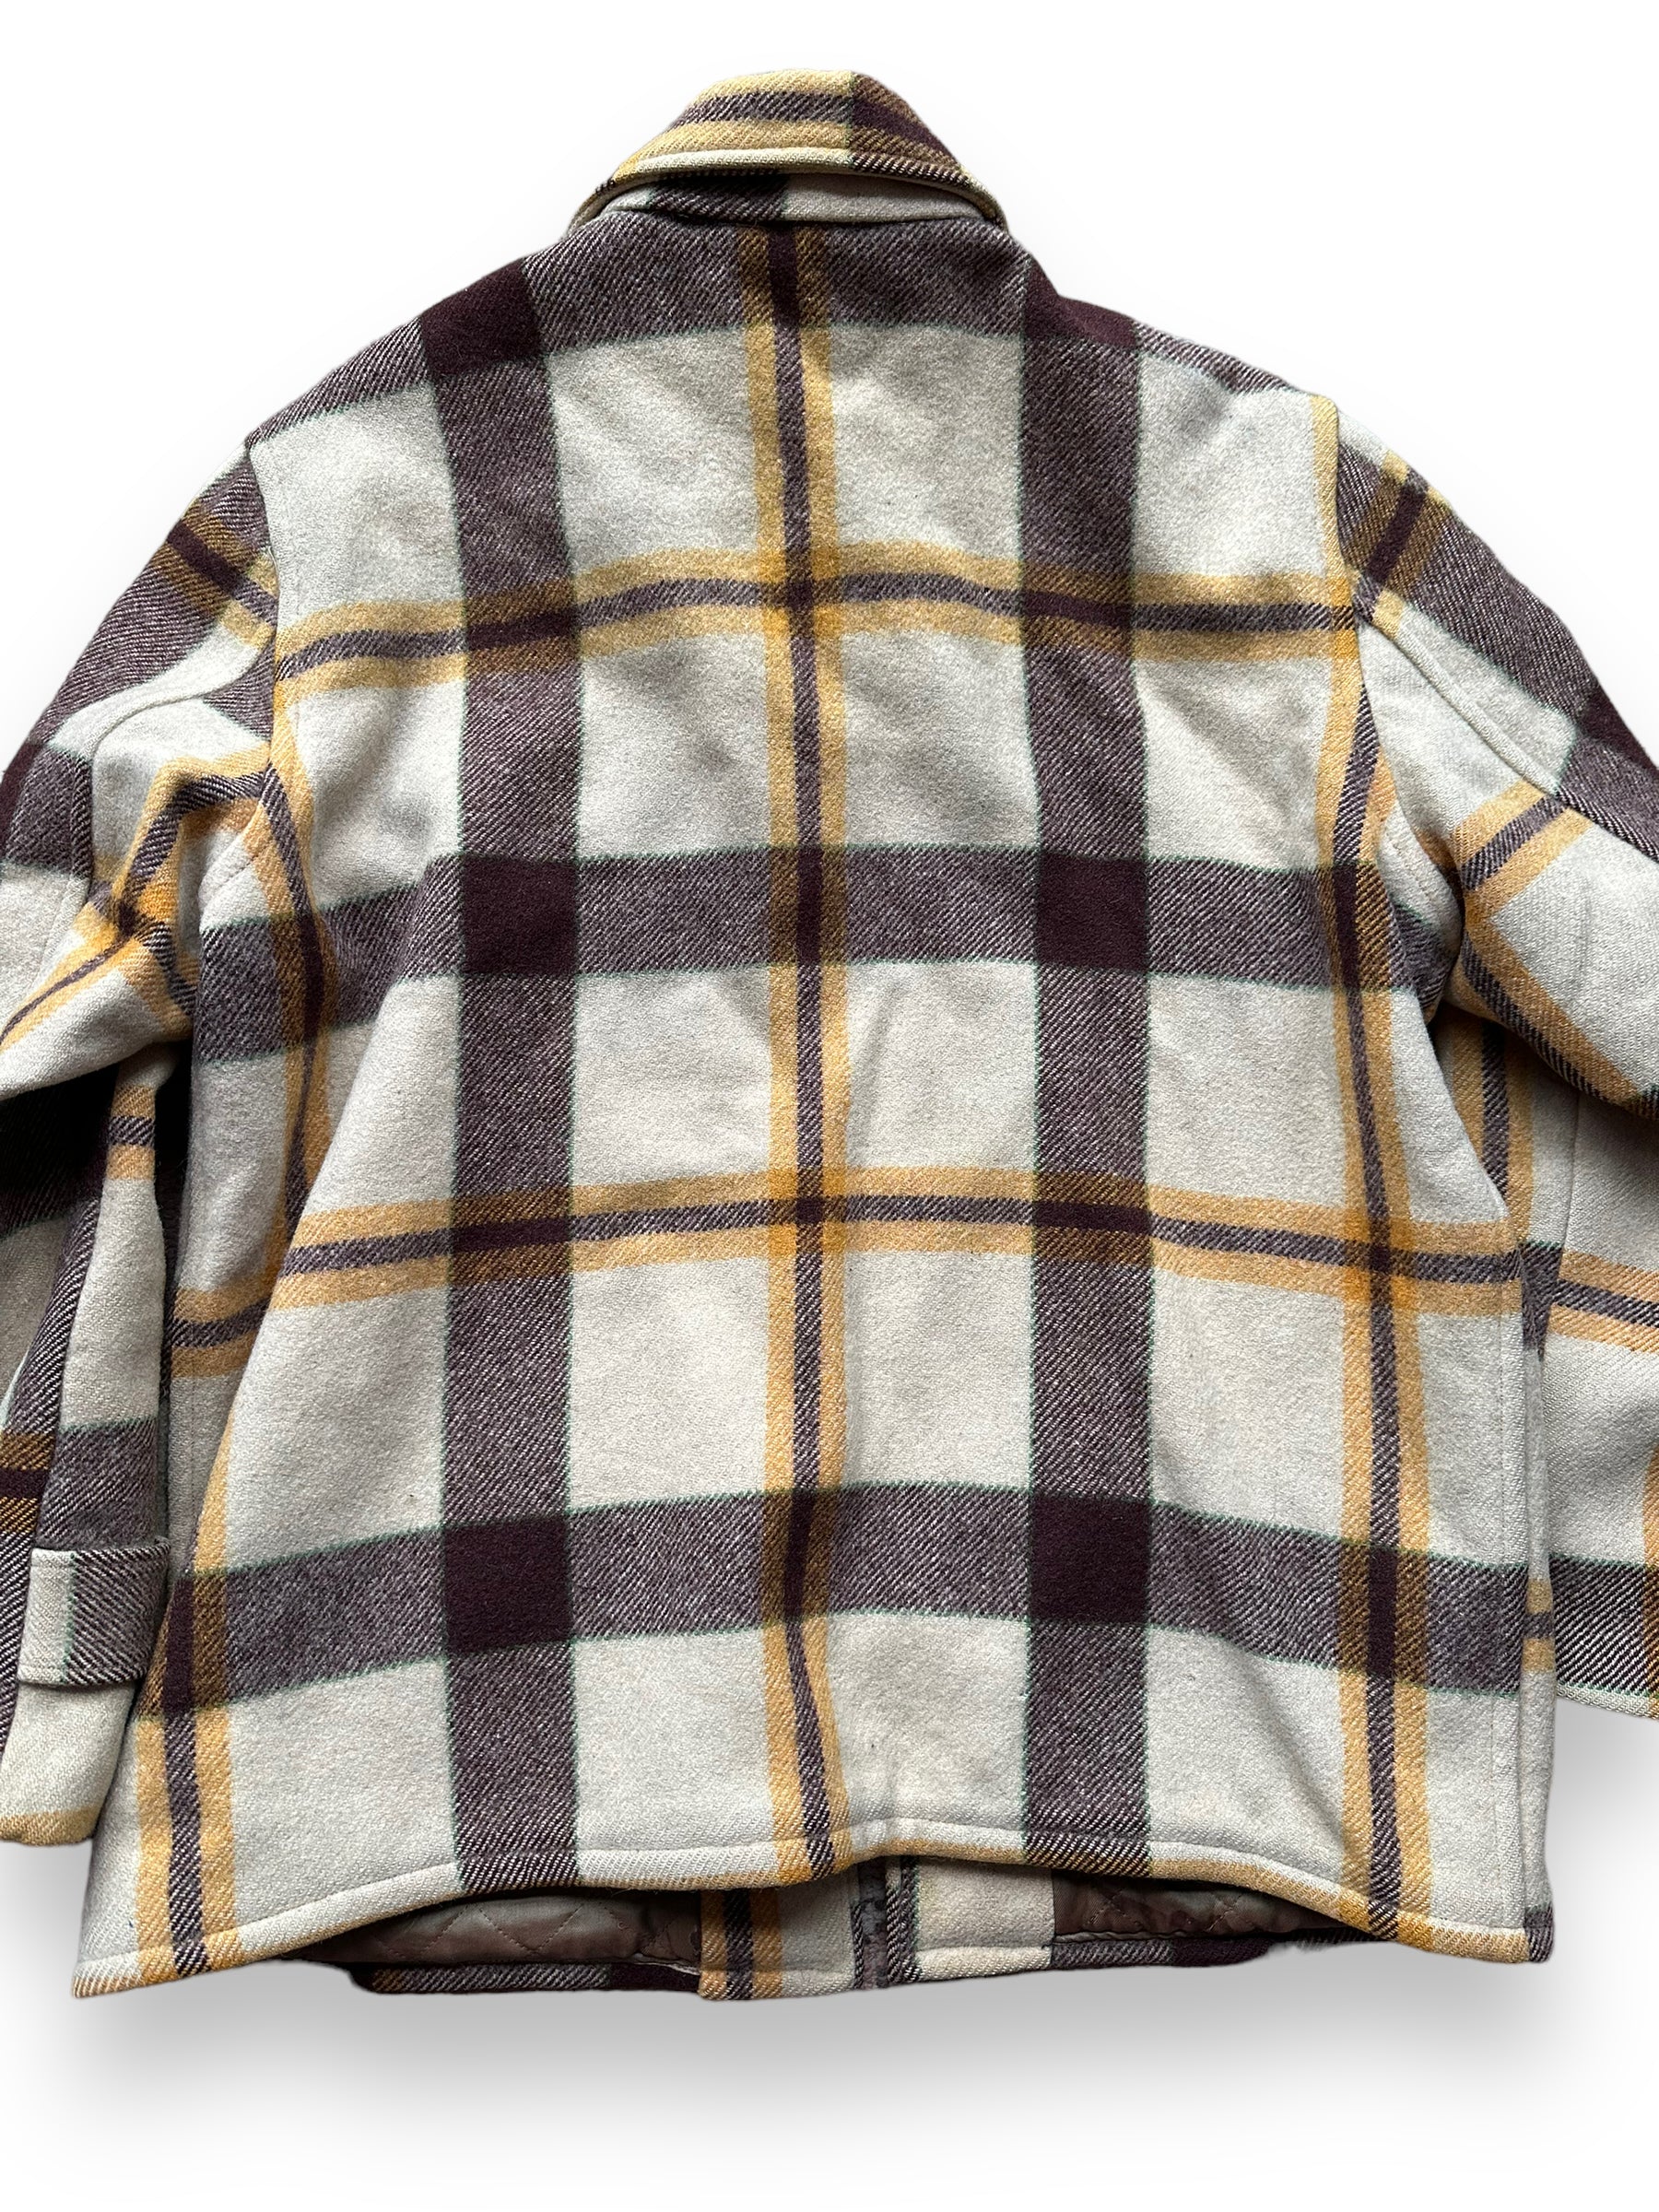 Rear Detail on Vintage Hercules Wool Jacket SZ XL |  Barn Owl Vintage Goods | Vintage Sears Wool Coat Seattle